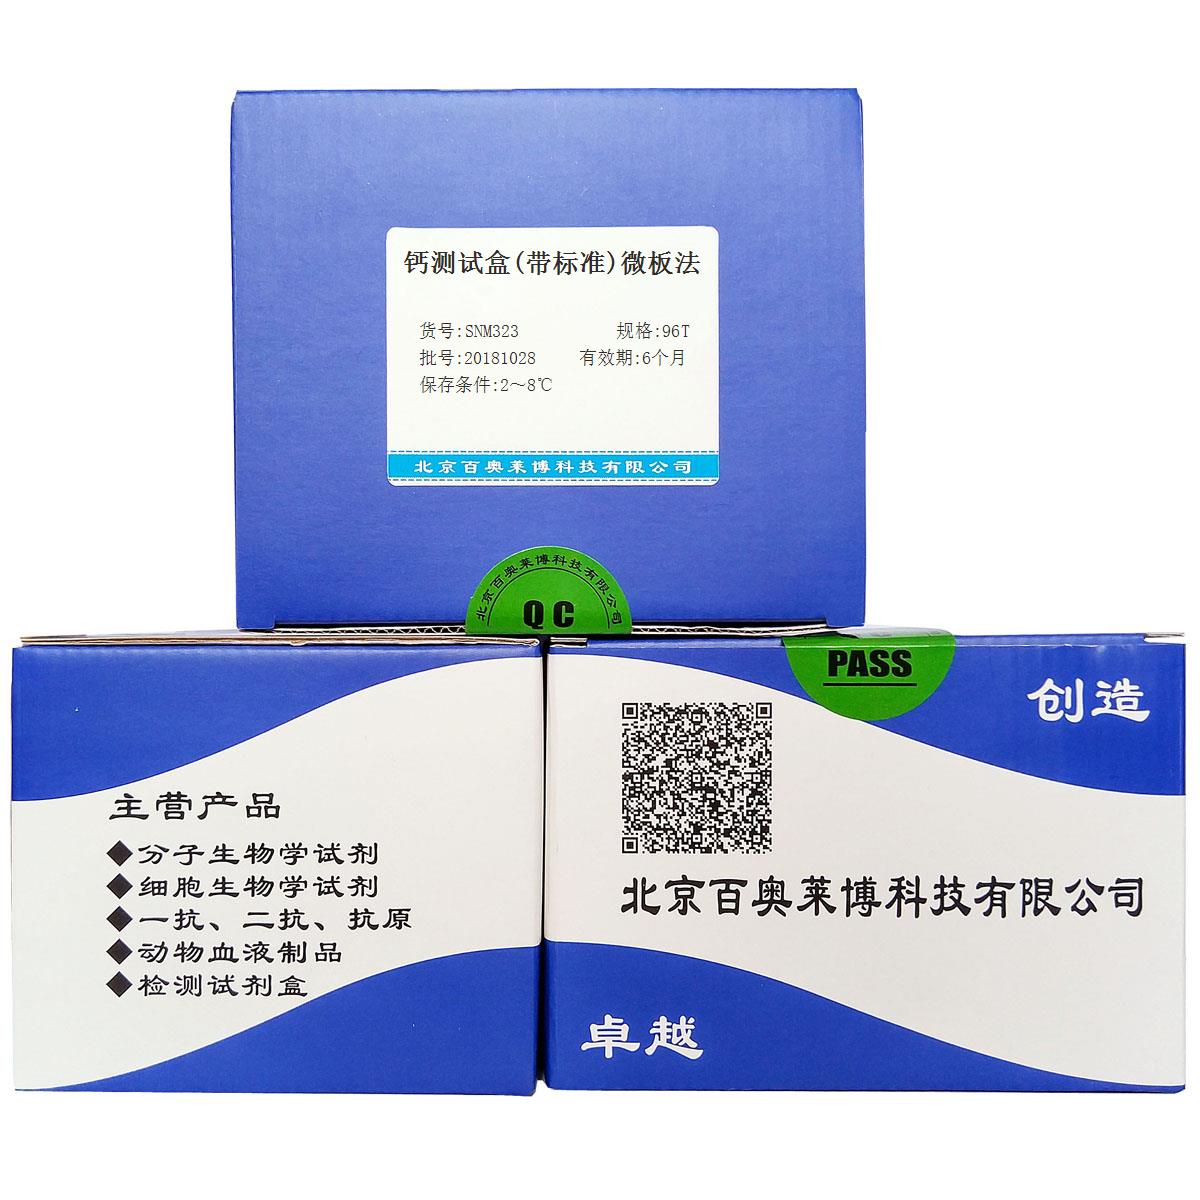 钙测试盒(带标准)微板法